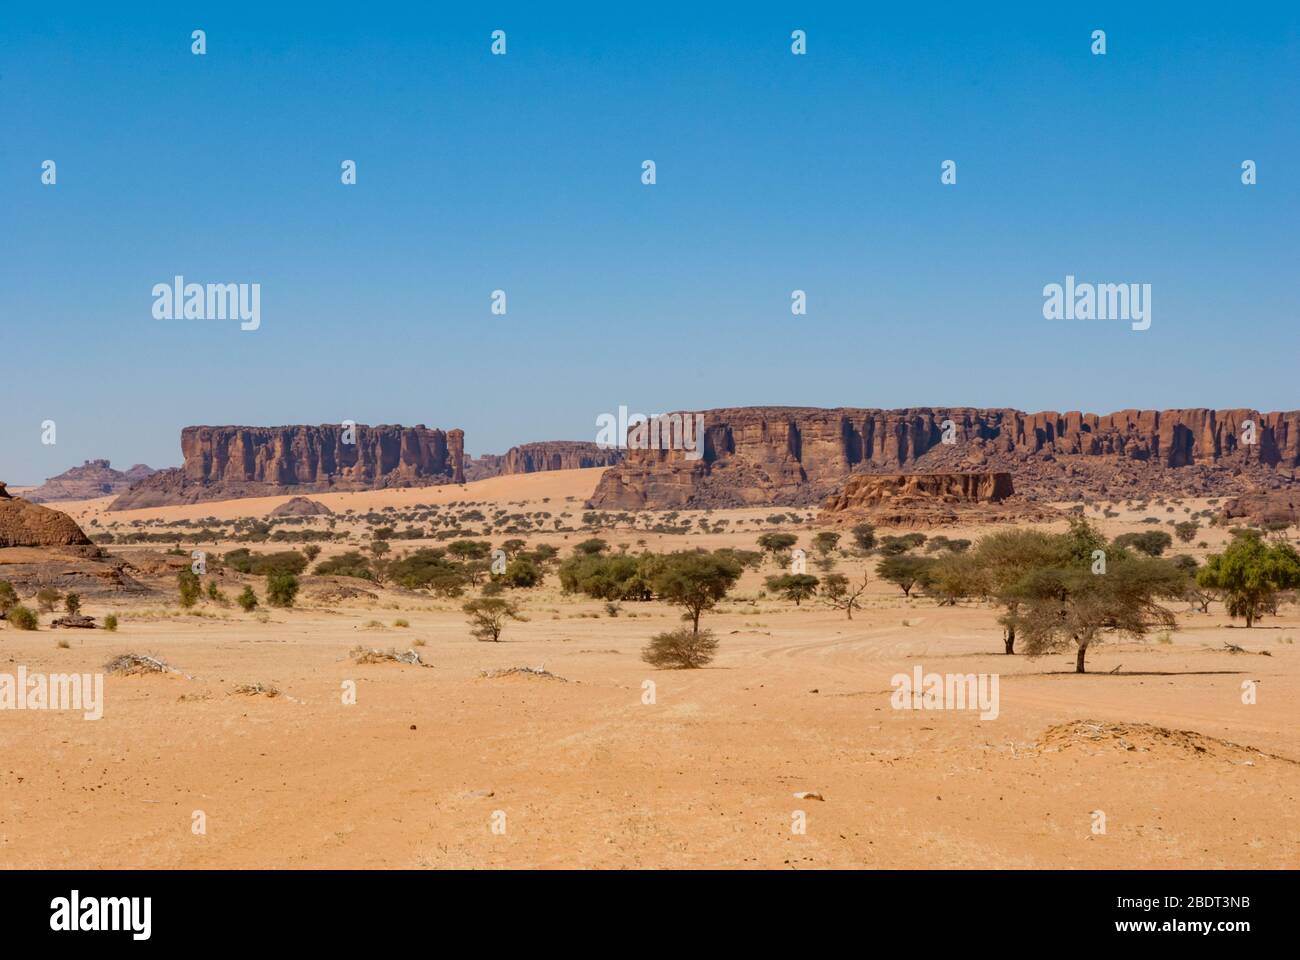 Formation de roches et végétation du désert, dessert du Sahara, Tchad, Afrique Banque D'Images